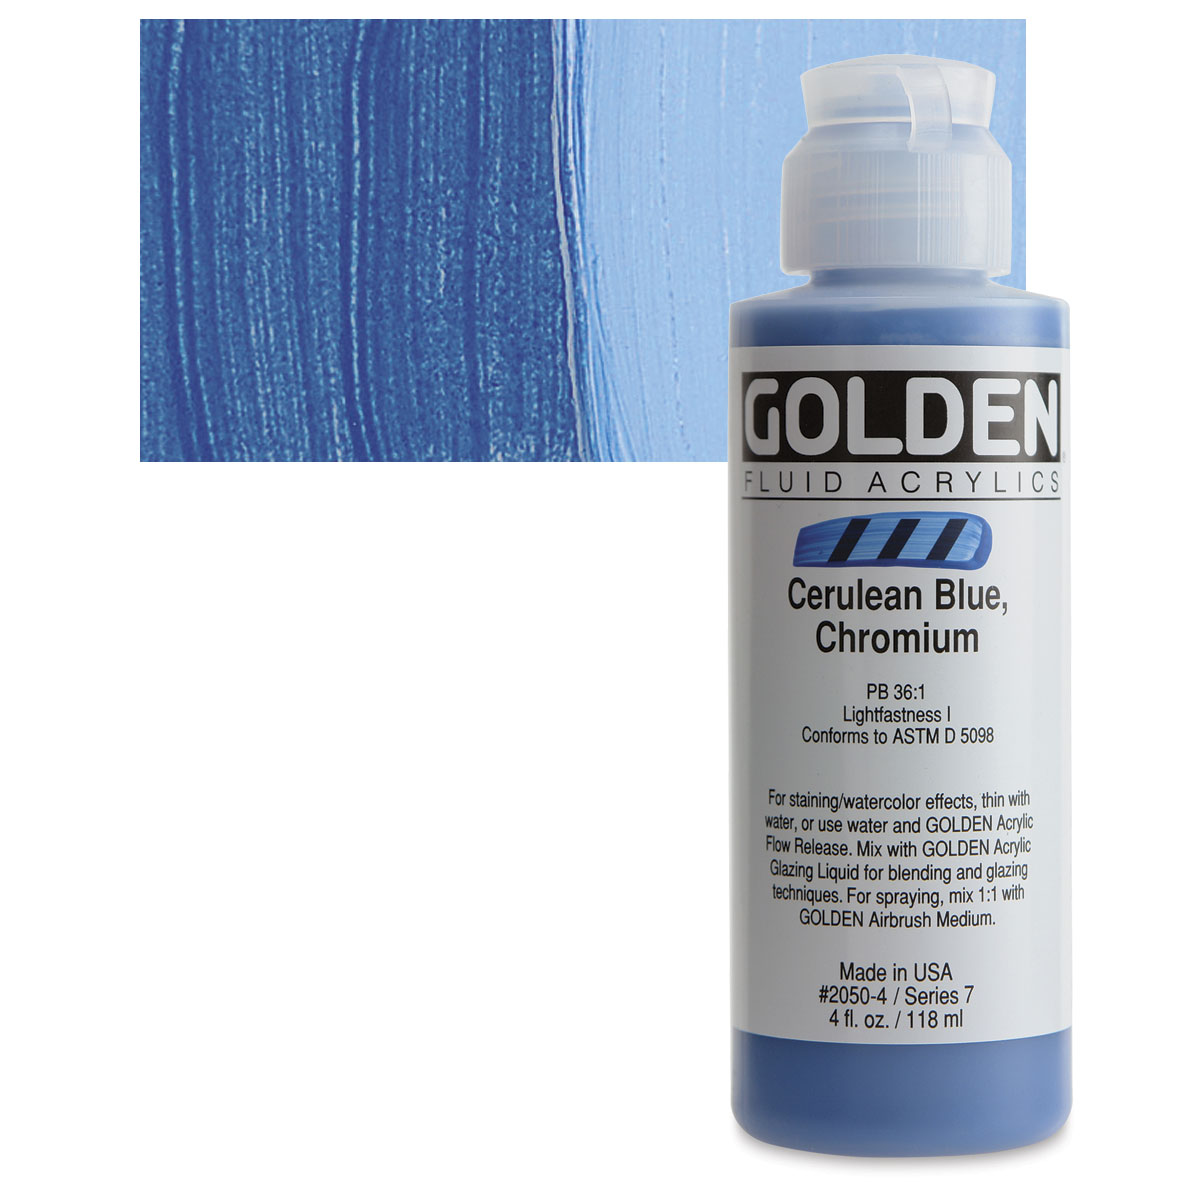 Golden Fluid Acrylics 1oz Cerulean Blue Deep